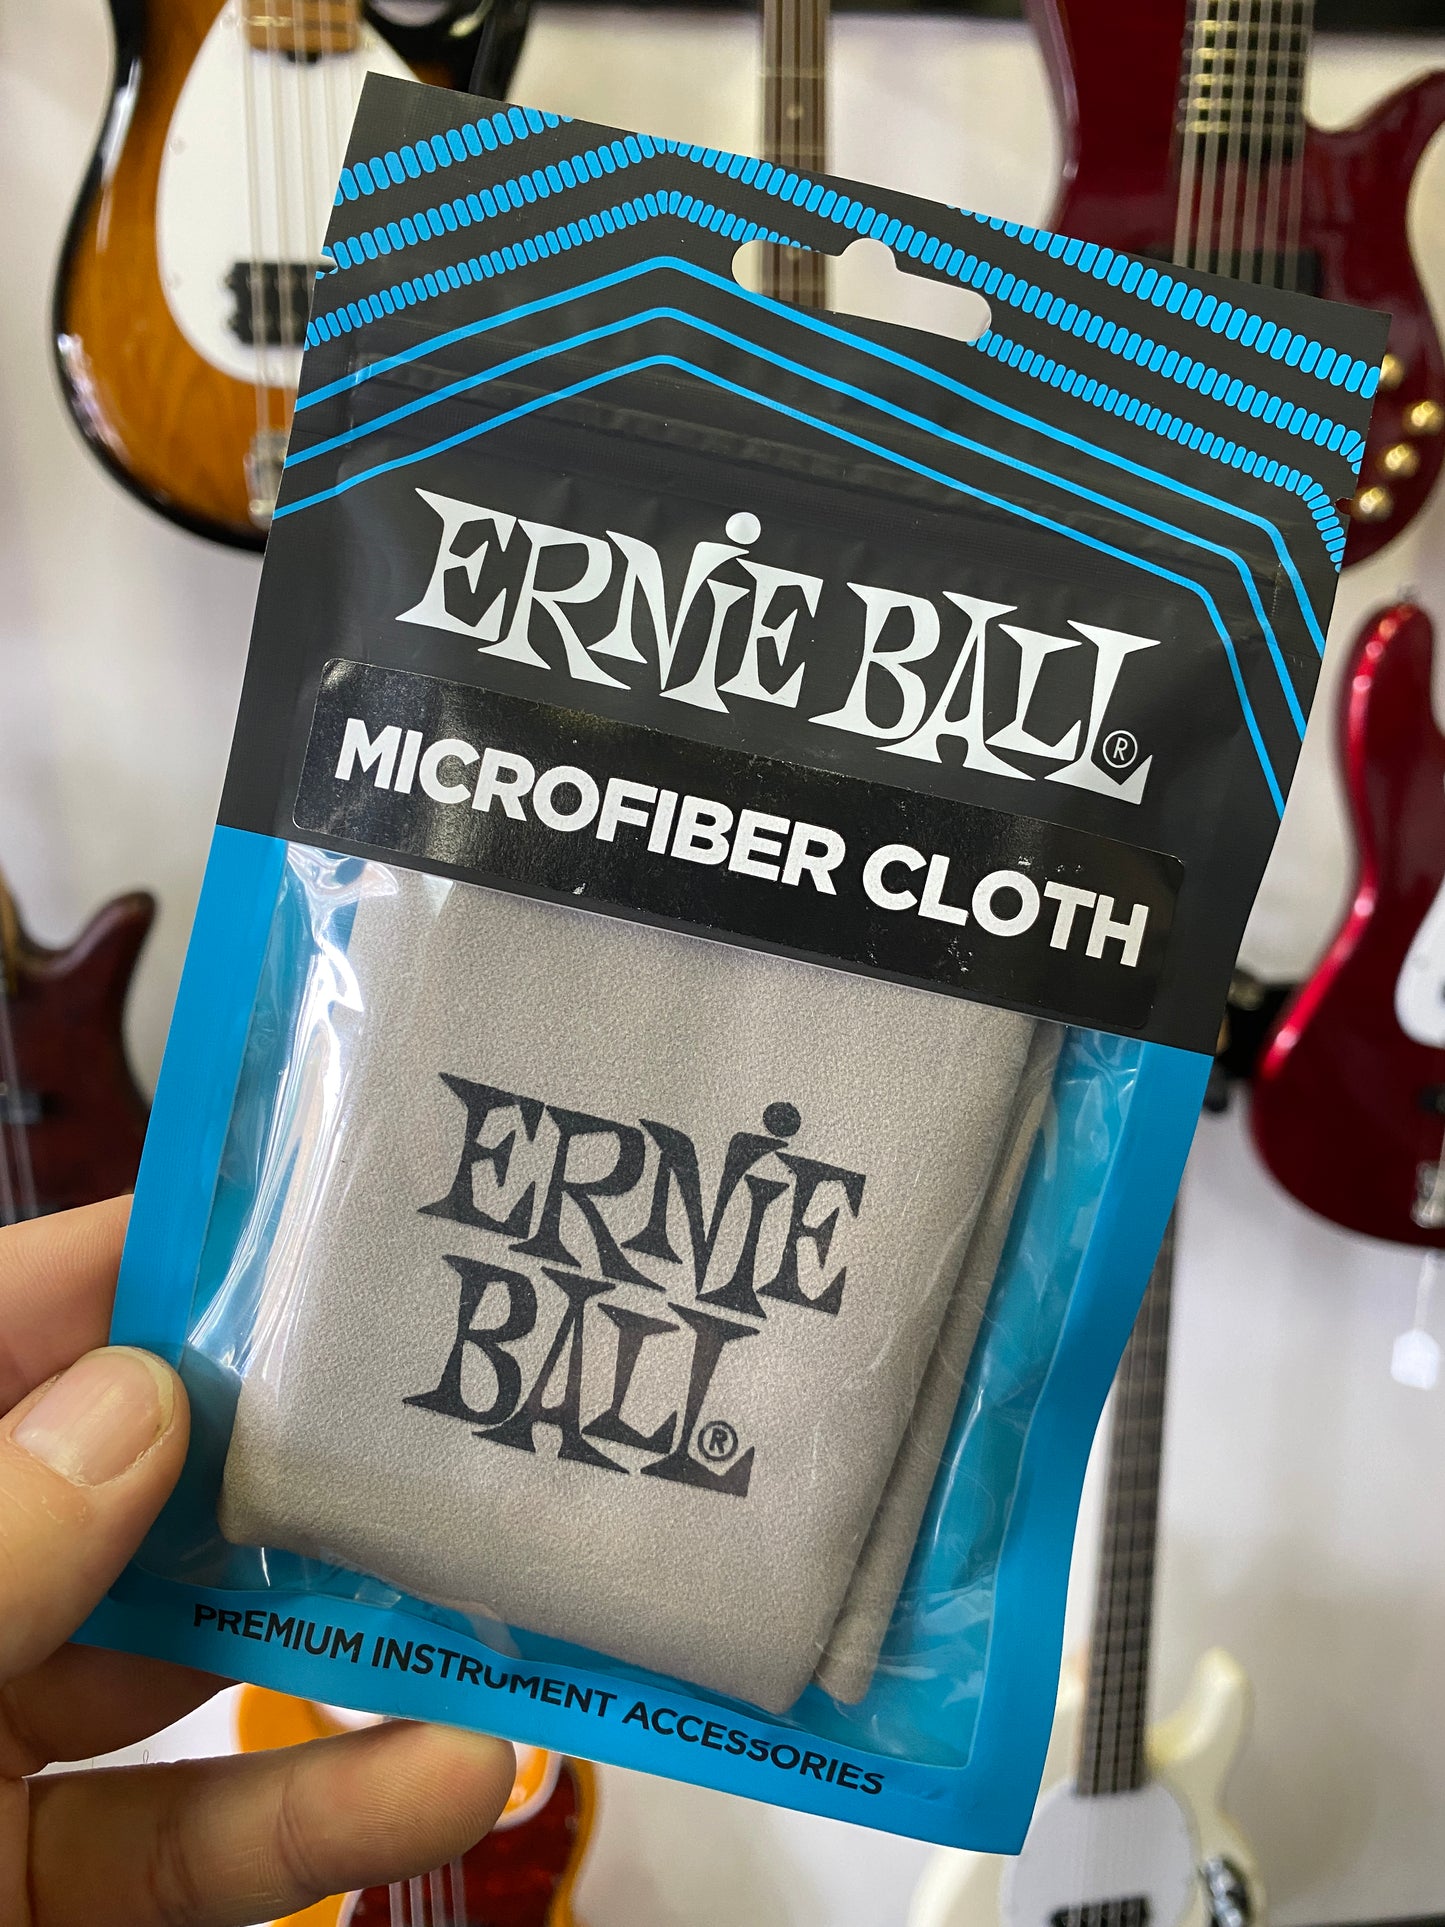 Ernie Ball Polish Cloth